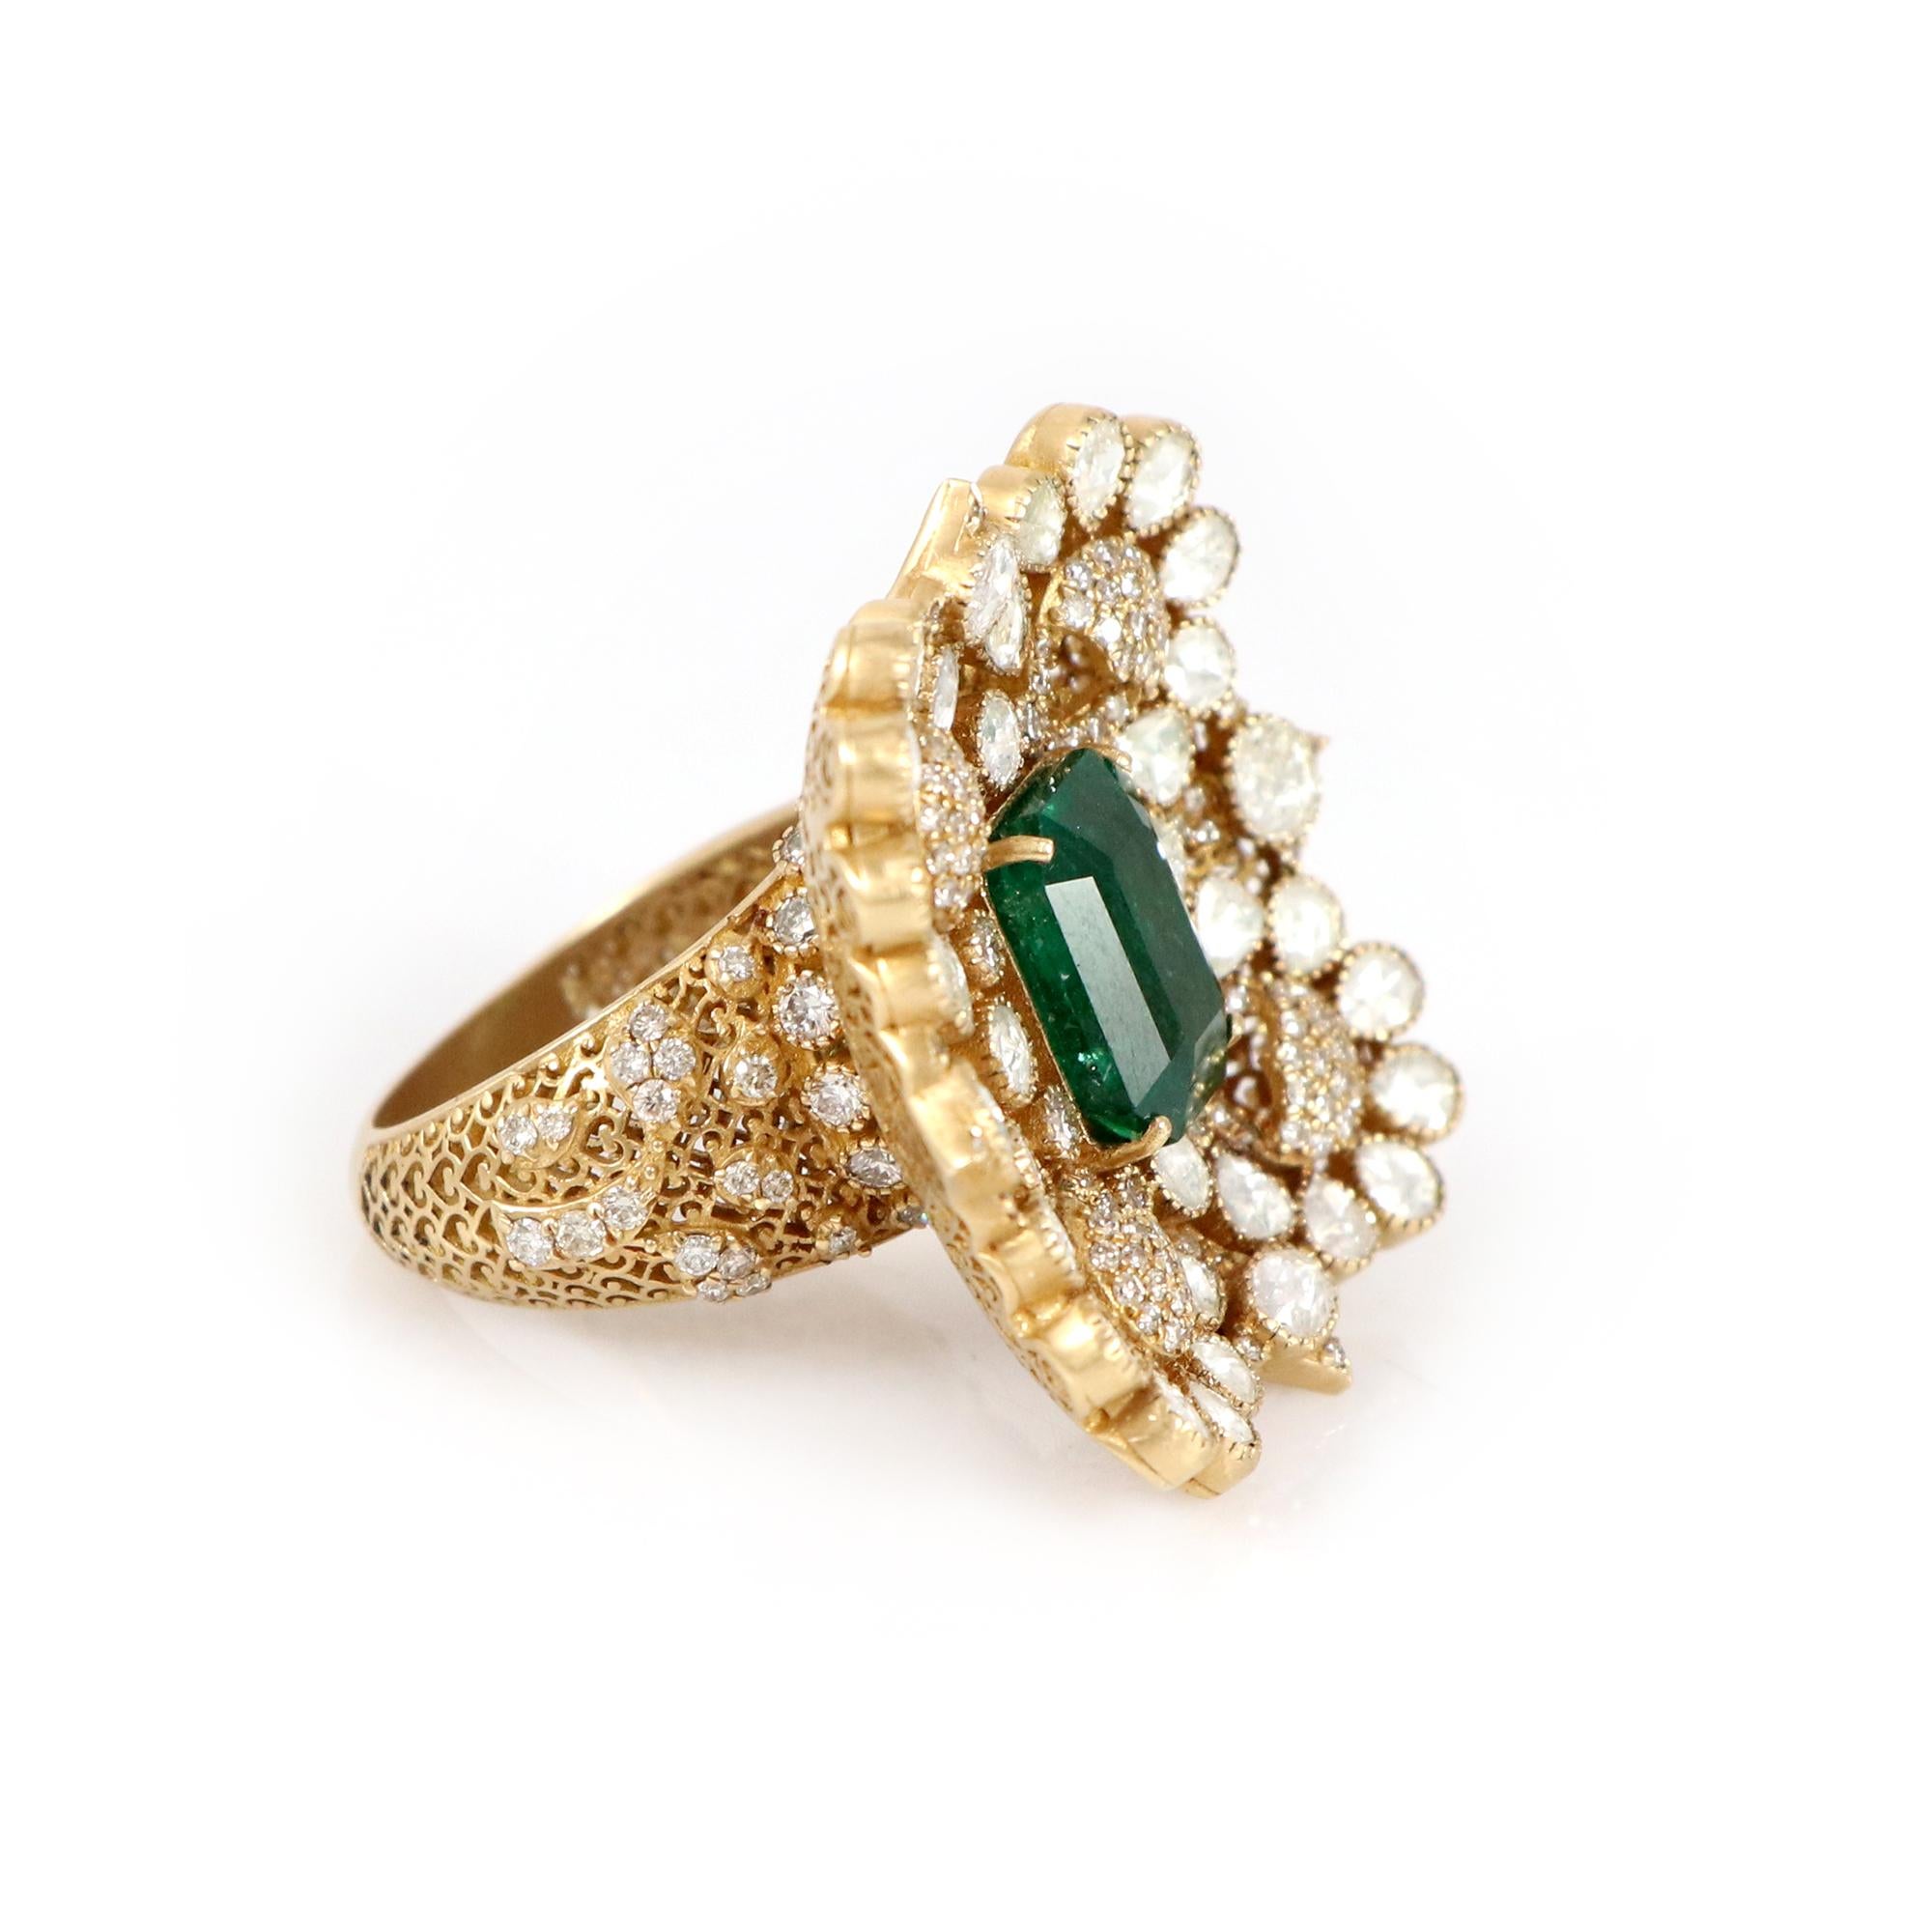 Unser zeitloser Ring aus 18-karätigem Gelbgold mit einem bezaubernden Smaragd im Zentrum und eleganten Diamanten im Rosenschliff strahlt unvergleichliche Raffinesse aus. Das satte Grün des sambischen Smaragds symbolisiert Fülle, während die zarten